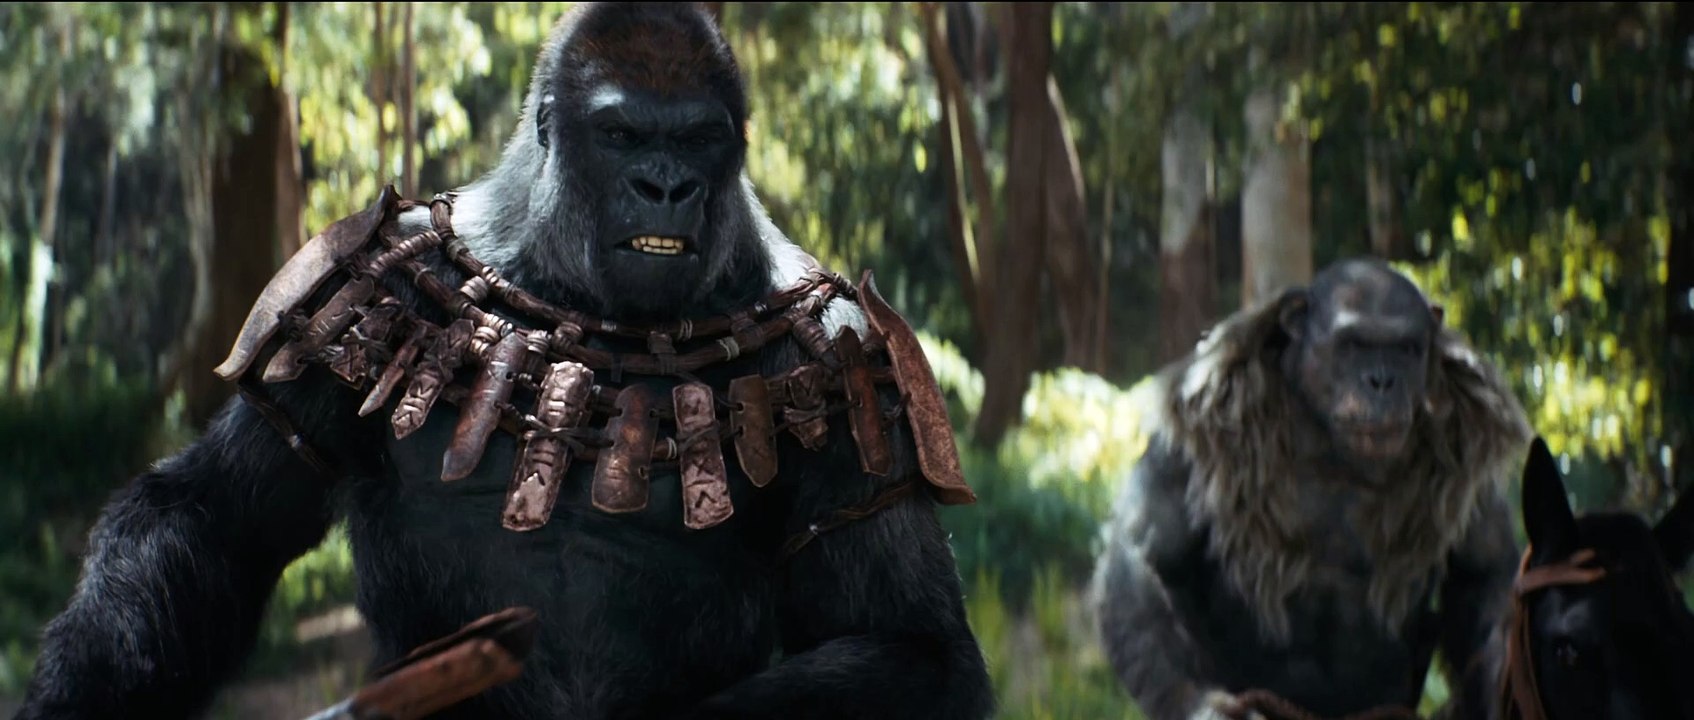 Im Trailer zu Kingdom of the Planet of the Apes ist die heutige Zeit nur noch eine Legende